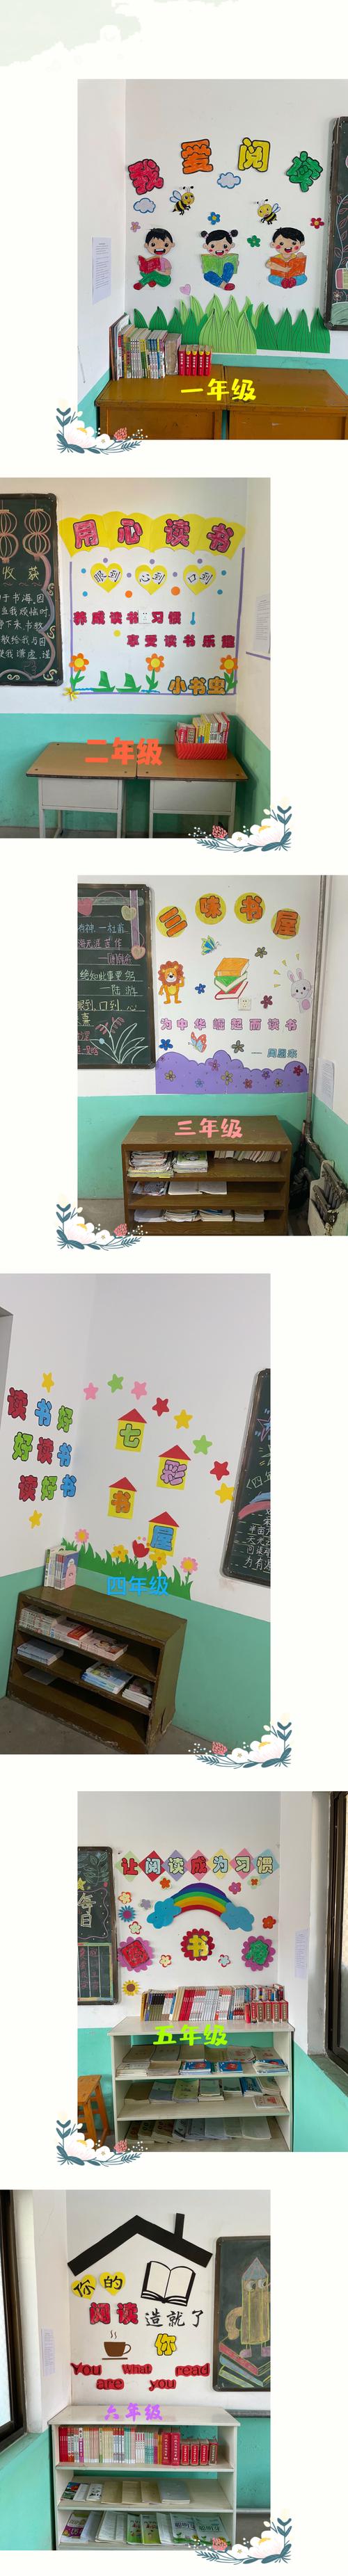 各班读书角精心设计成为教室一道亮丽的风景成为孩子心灵的补妇站